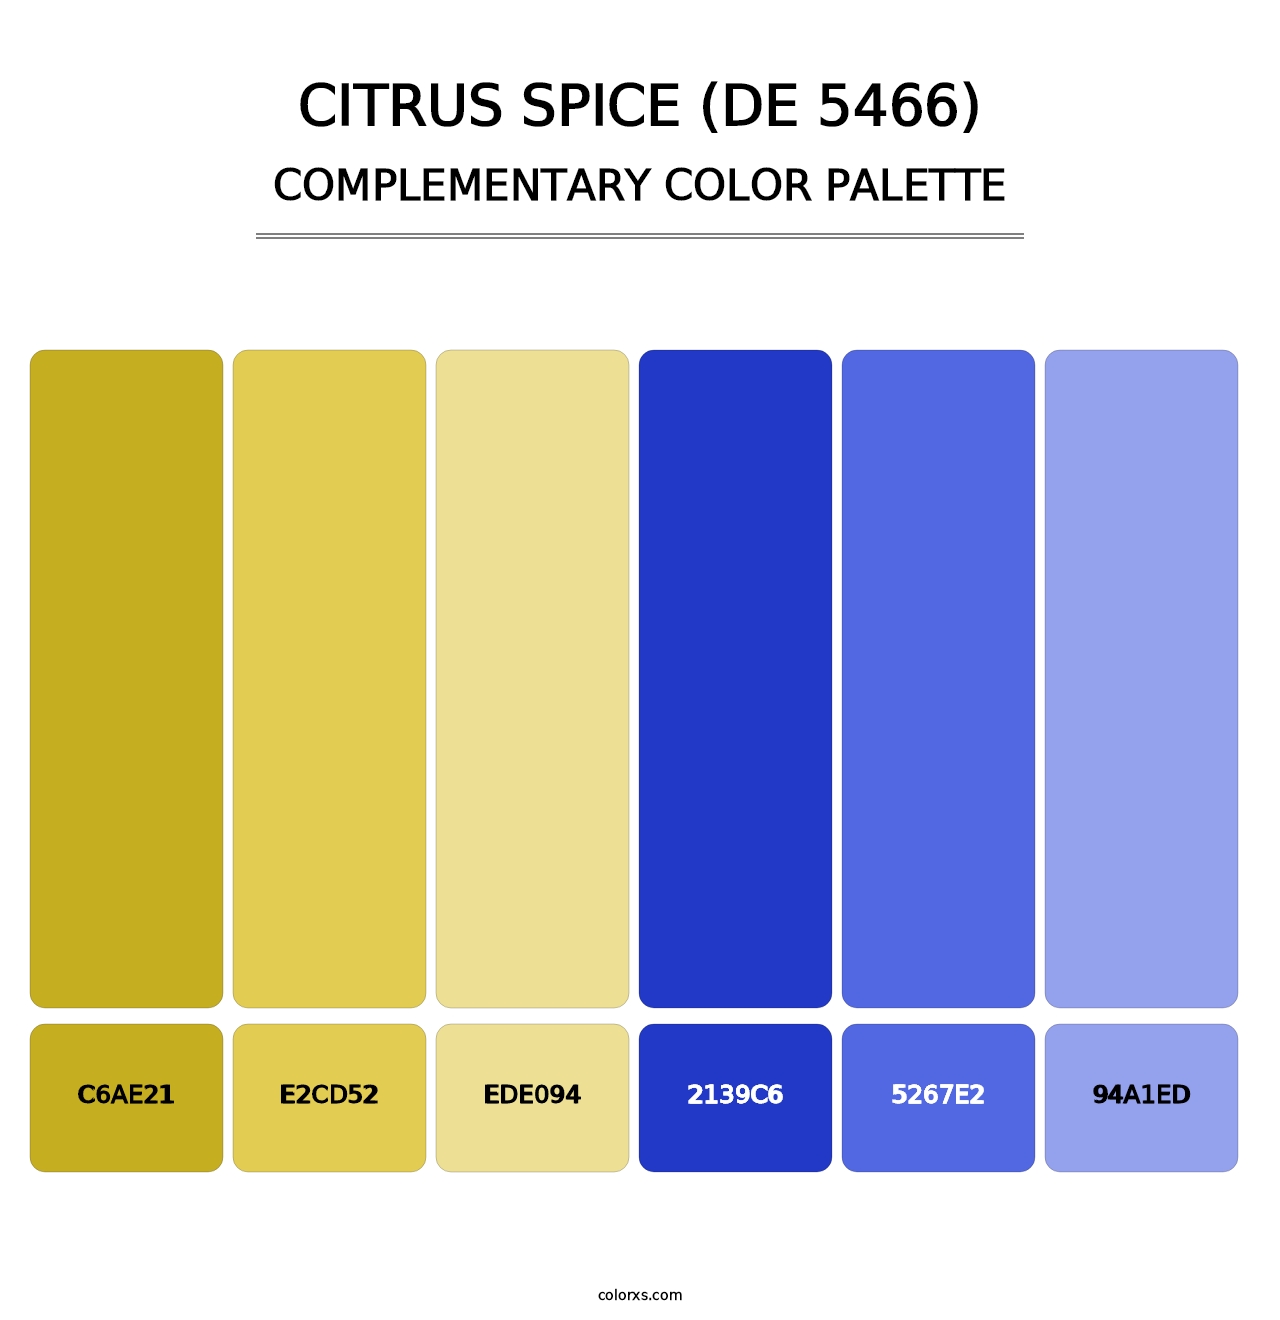 Citrus Spice (DE 5466) - Complementary Color Palette